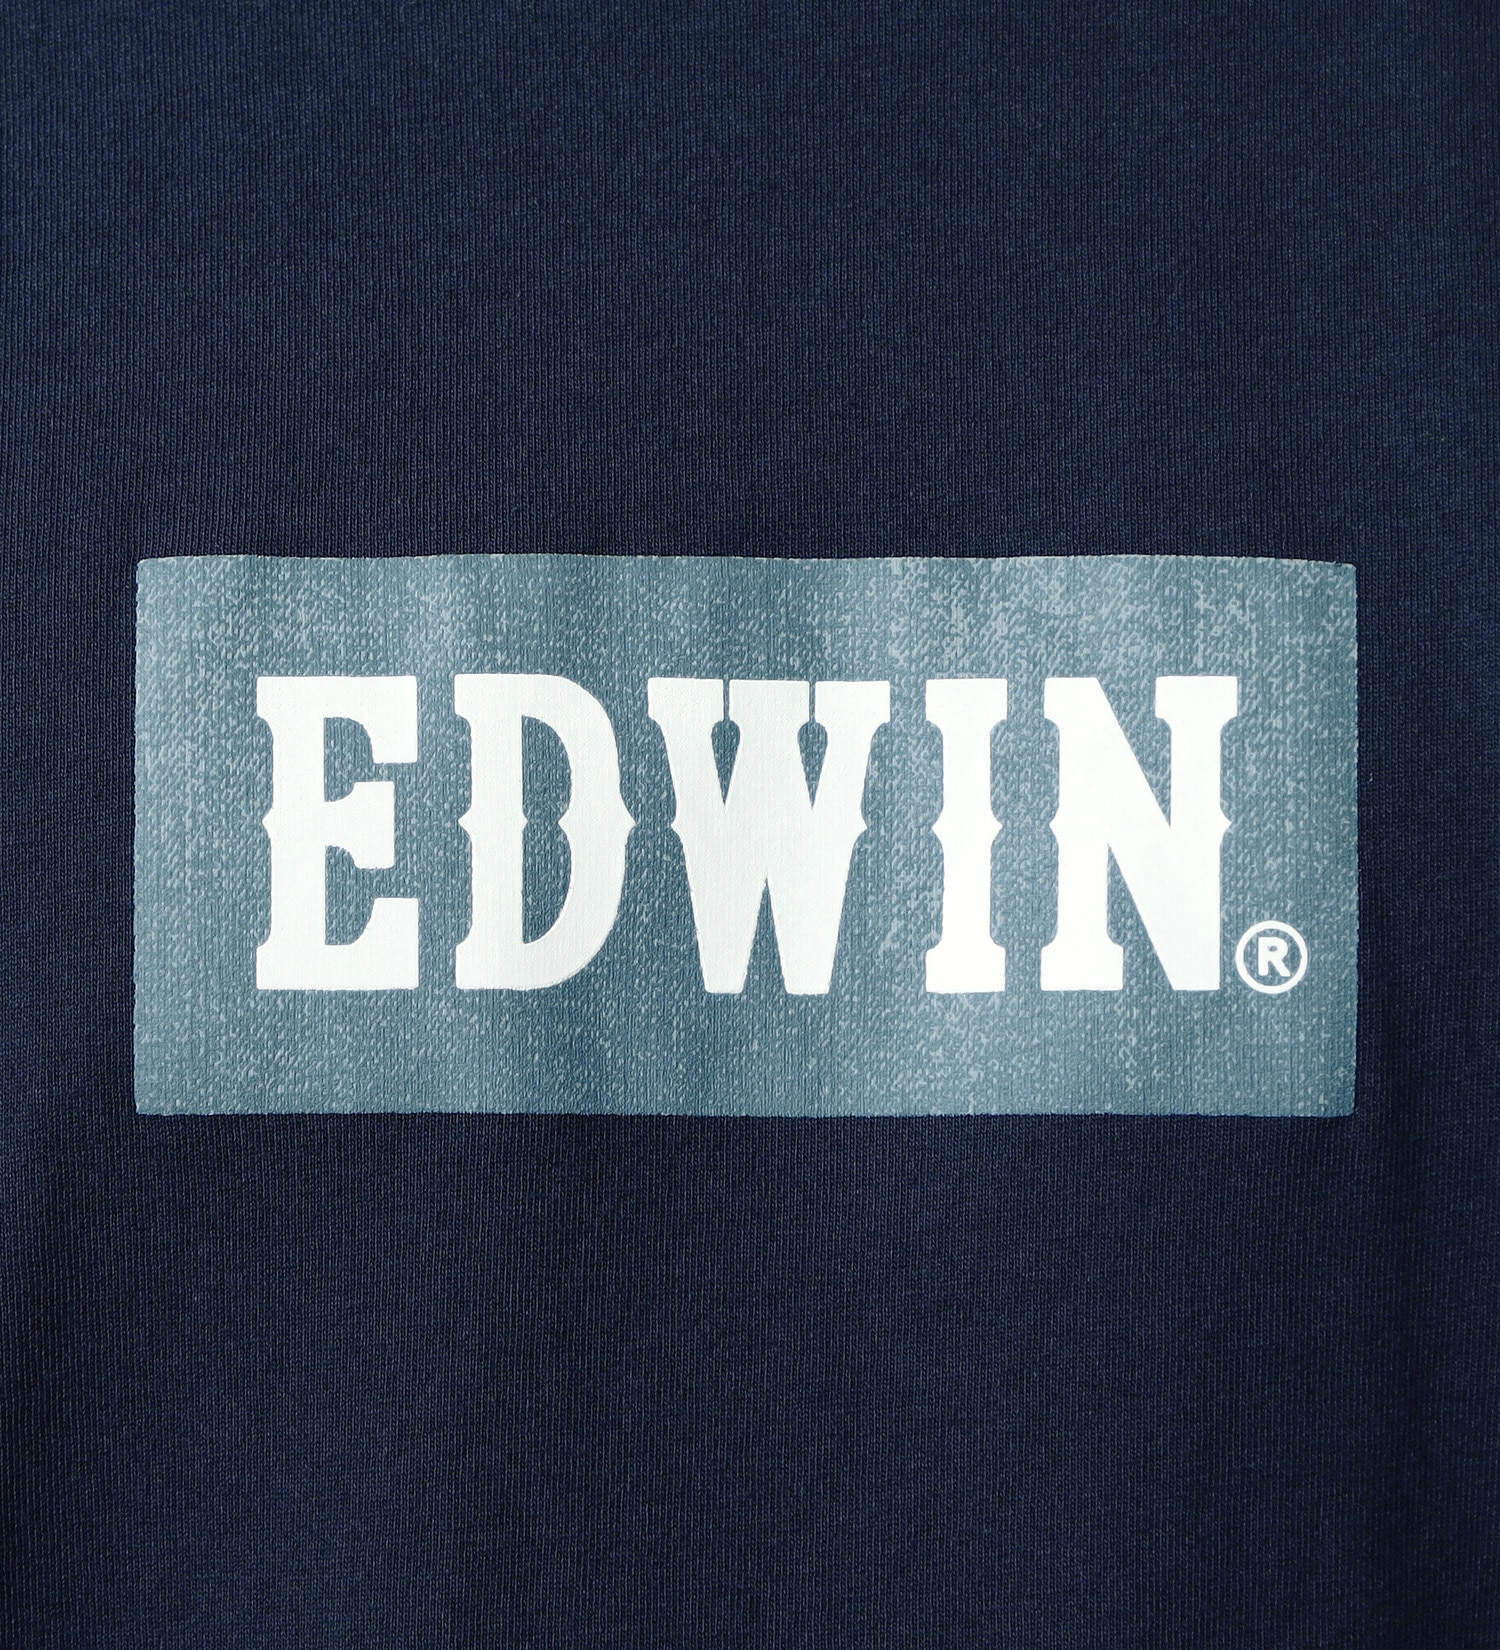 EDWIN(エドウイン)のボックスロゴプリントTシャツ【アウトレット店舗・WEB限定】|トップス/Tシャツ/カットソー/メンズ|ネイビー